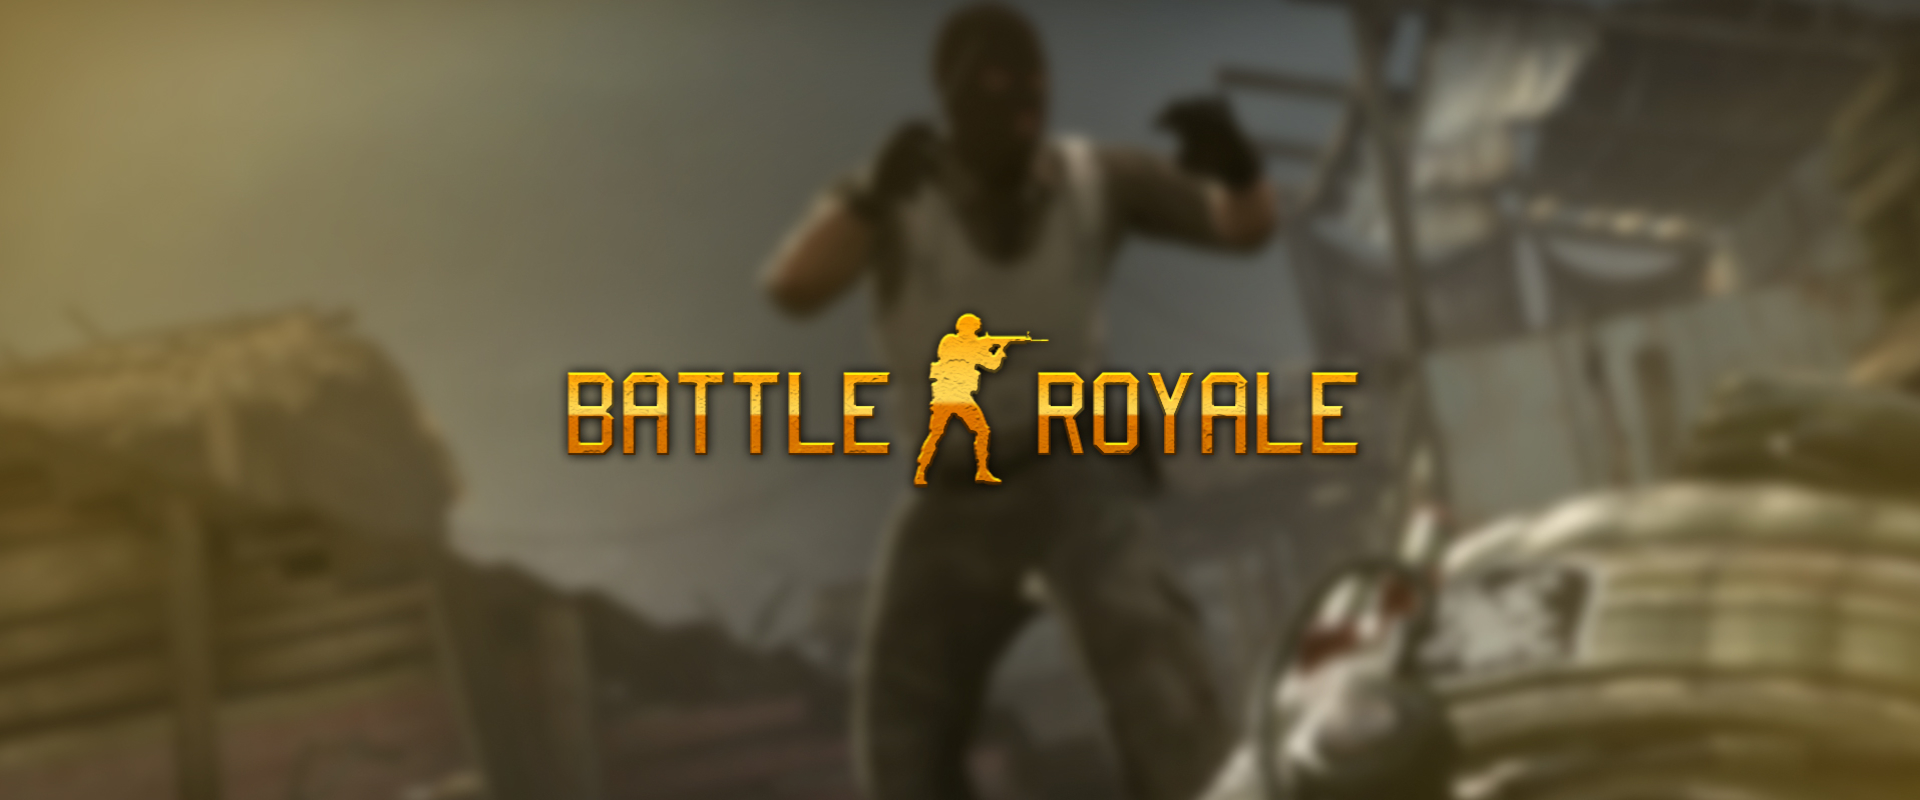 A leakek szerint egyre inkább valósággá válik a CS:GO Battle Royale